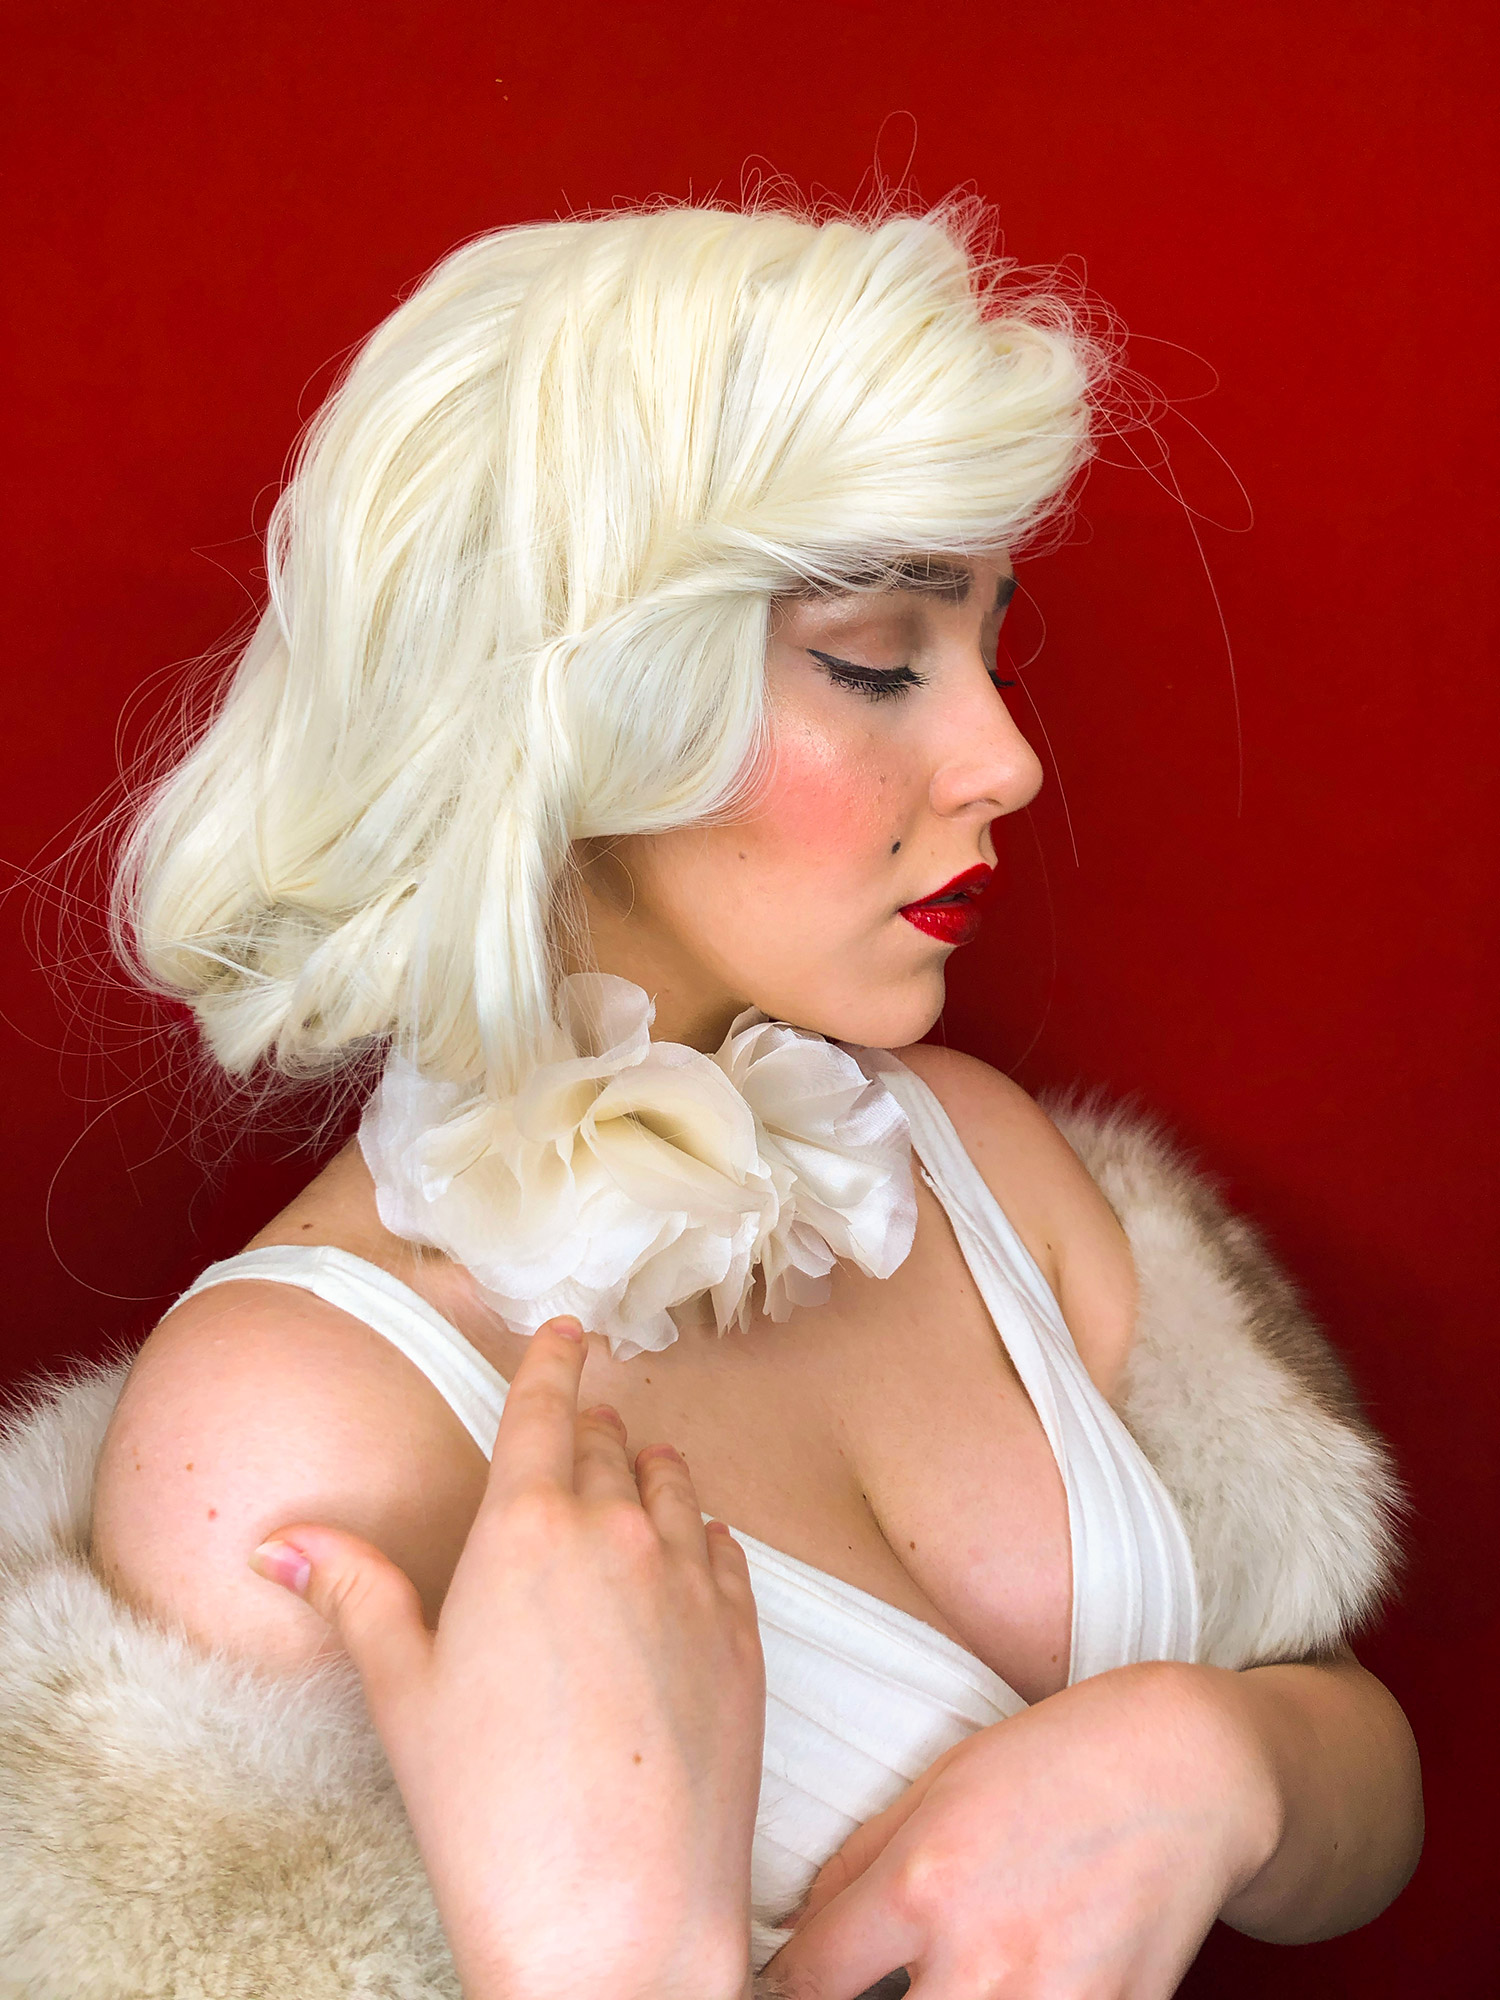 Ritratto fotografico cosplay di Marilyn Monroe che indossa una collana fiorita Vipuntozero